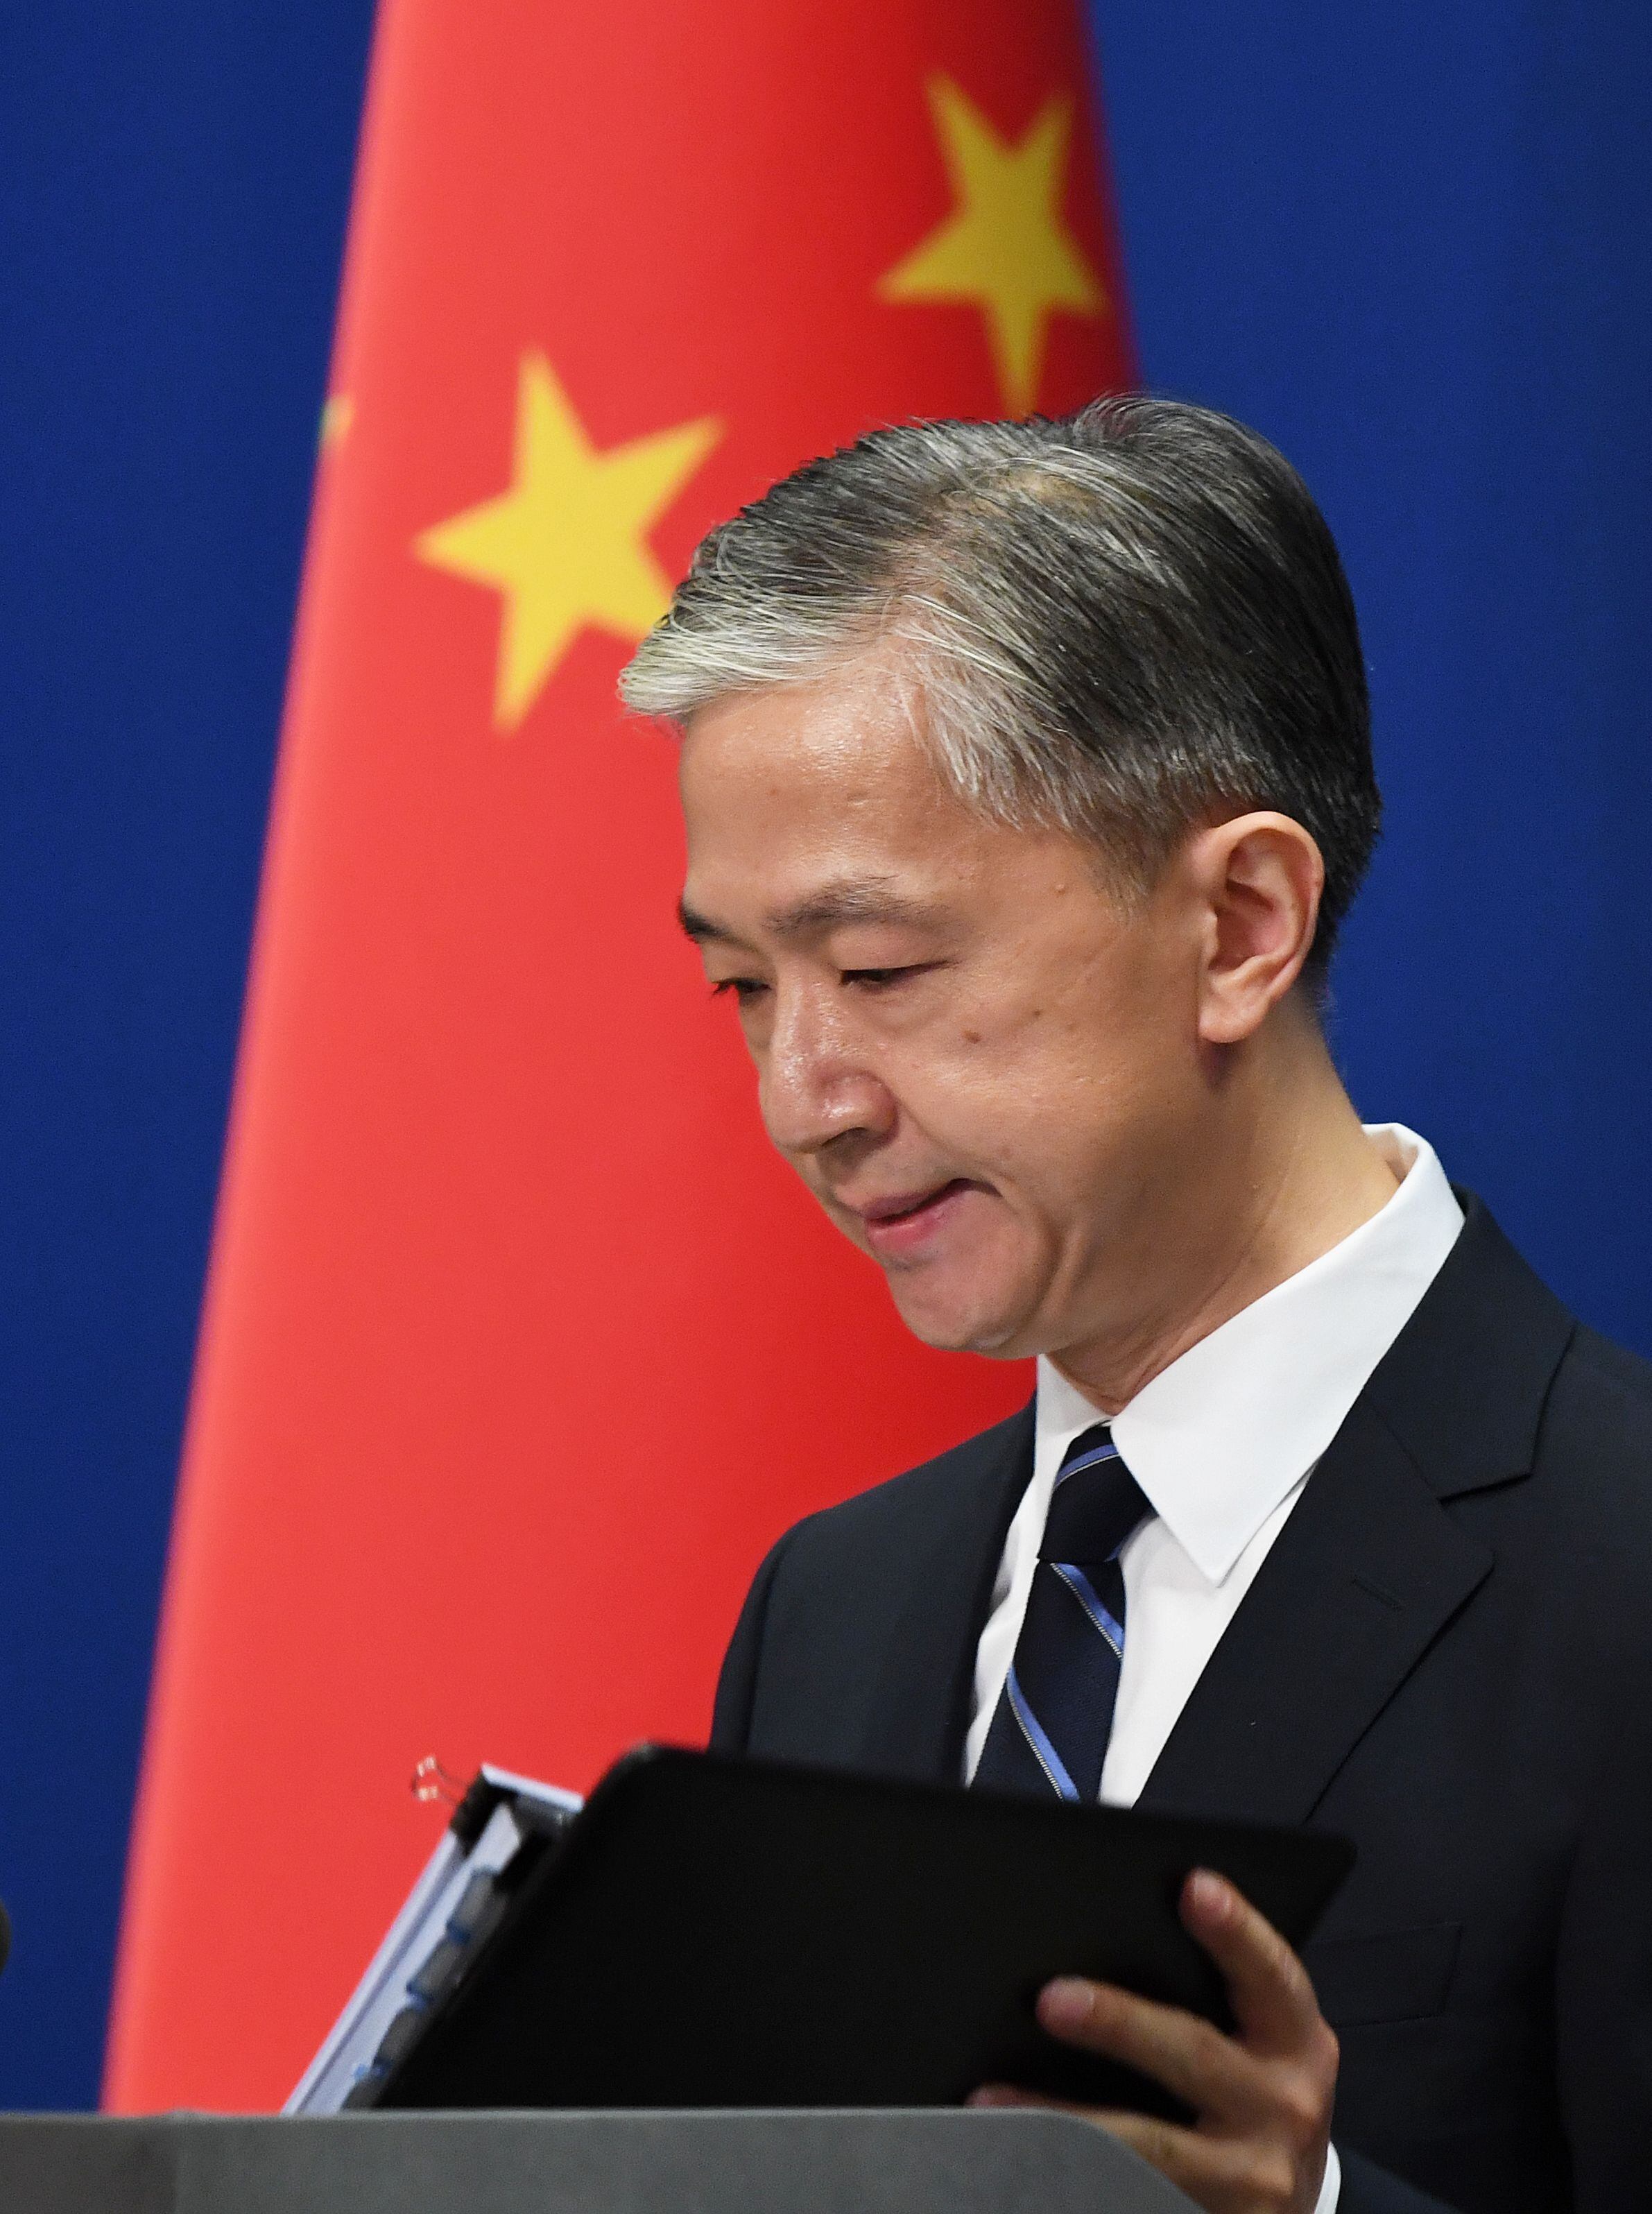 El portavoz del Ministerio de Relaciones Exteriores de China, Wang Wenbin, advierte sobre el riesgo de conflicto en el estrecho de Taiwán debido al apoyo militar de Estados Unidos a la isla. (Foto de GREG BAKER / AFP)